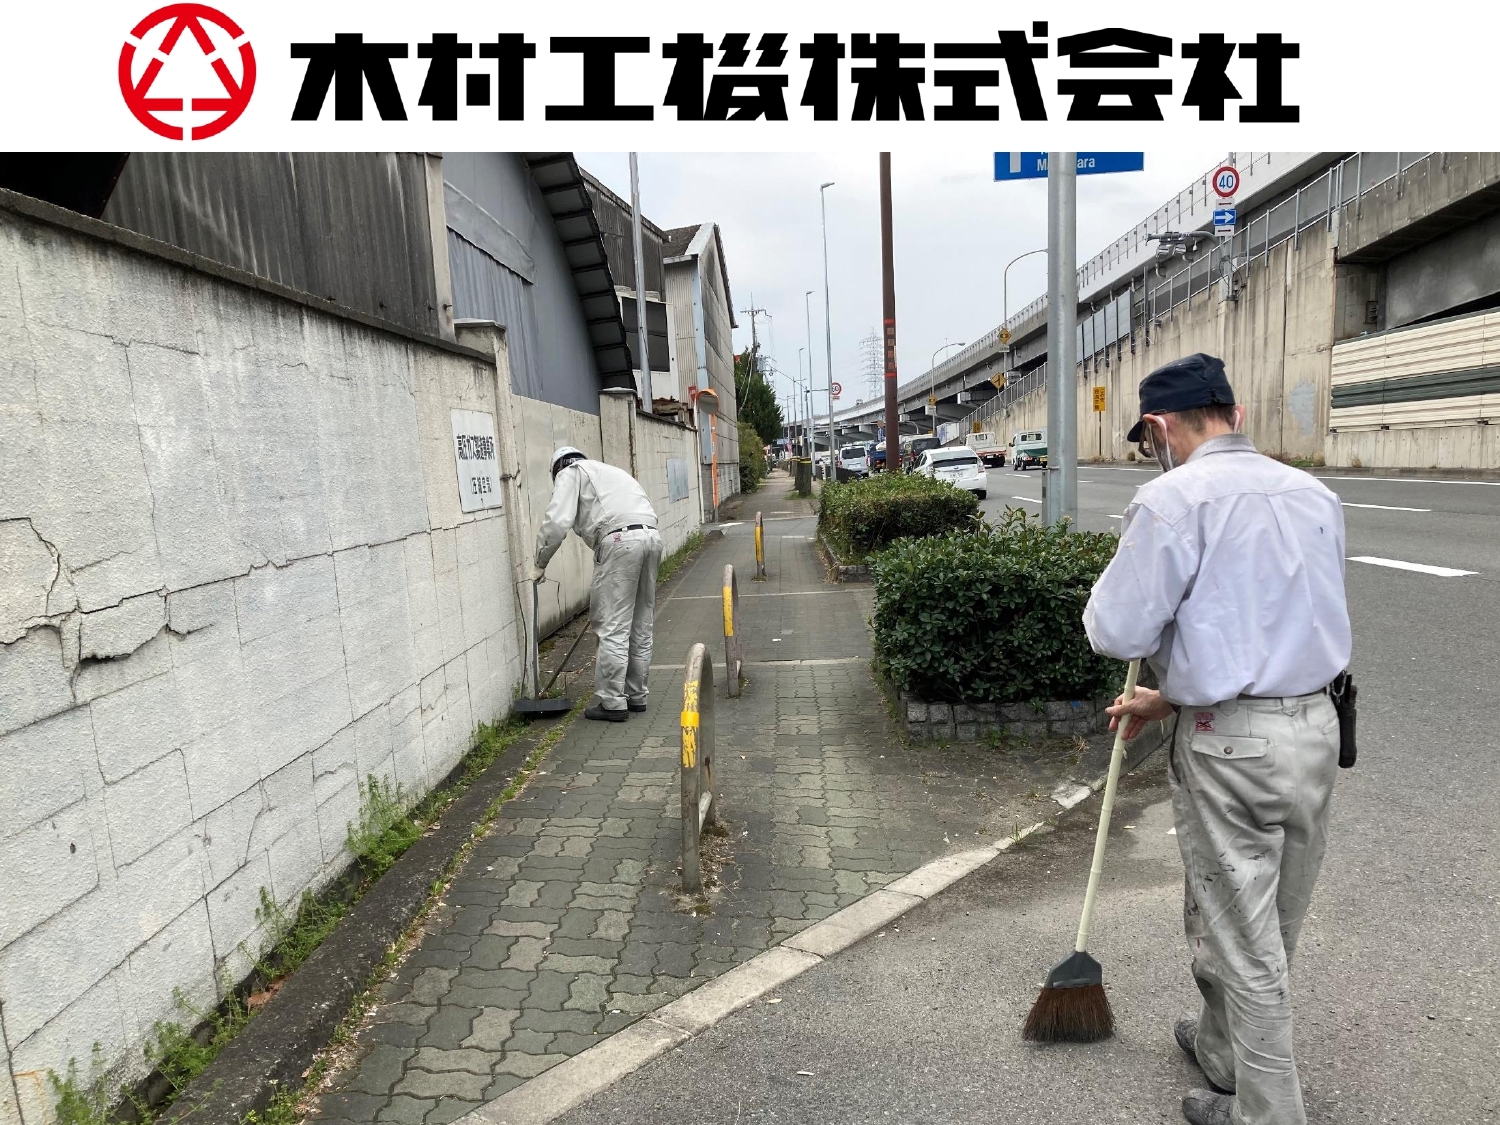 木村工機株式会社の清掃画像です。